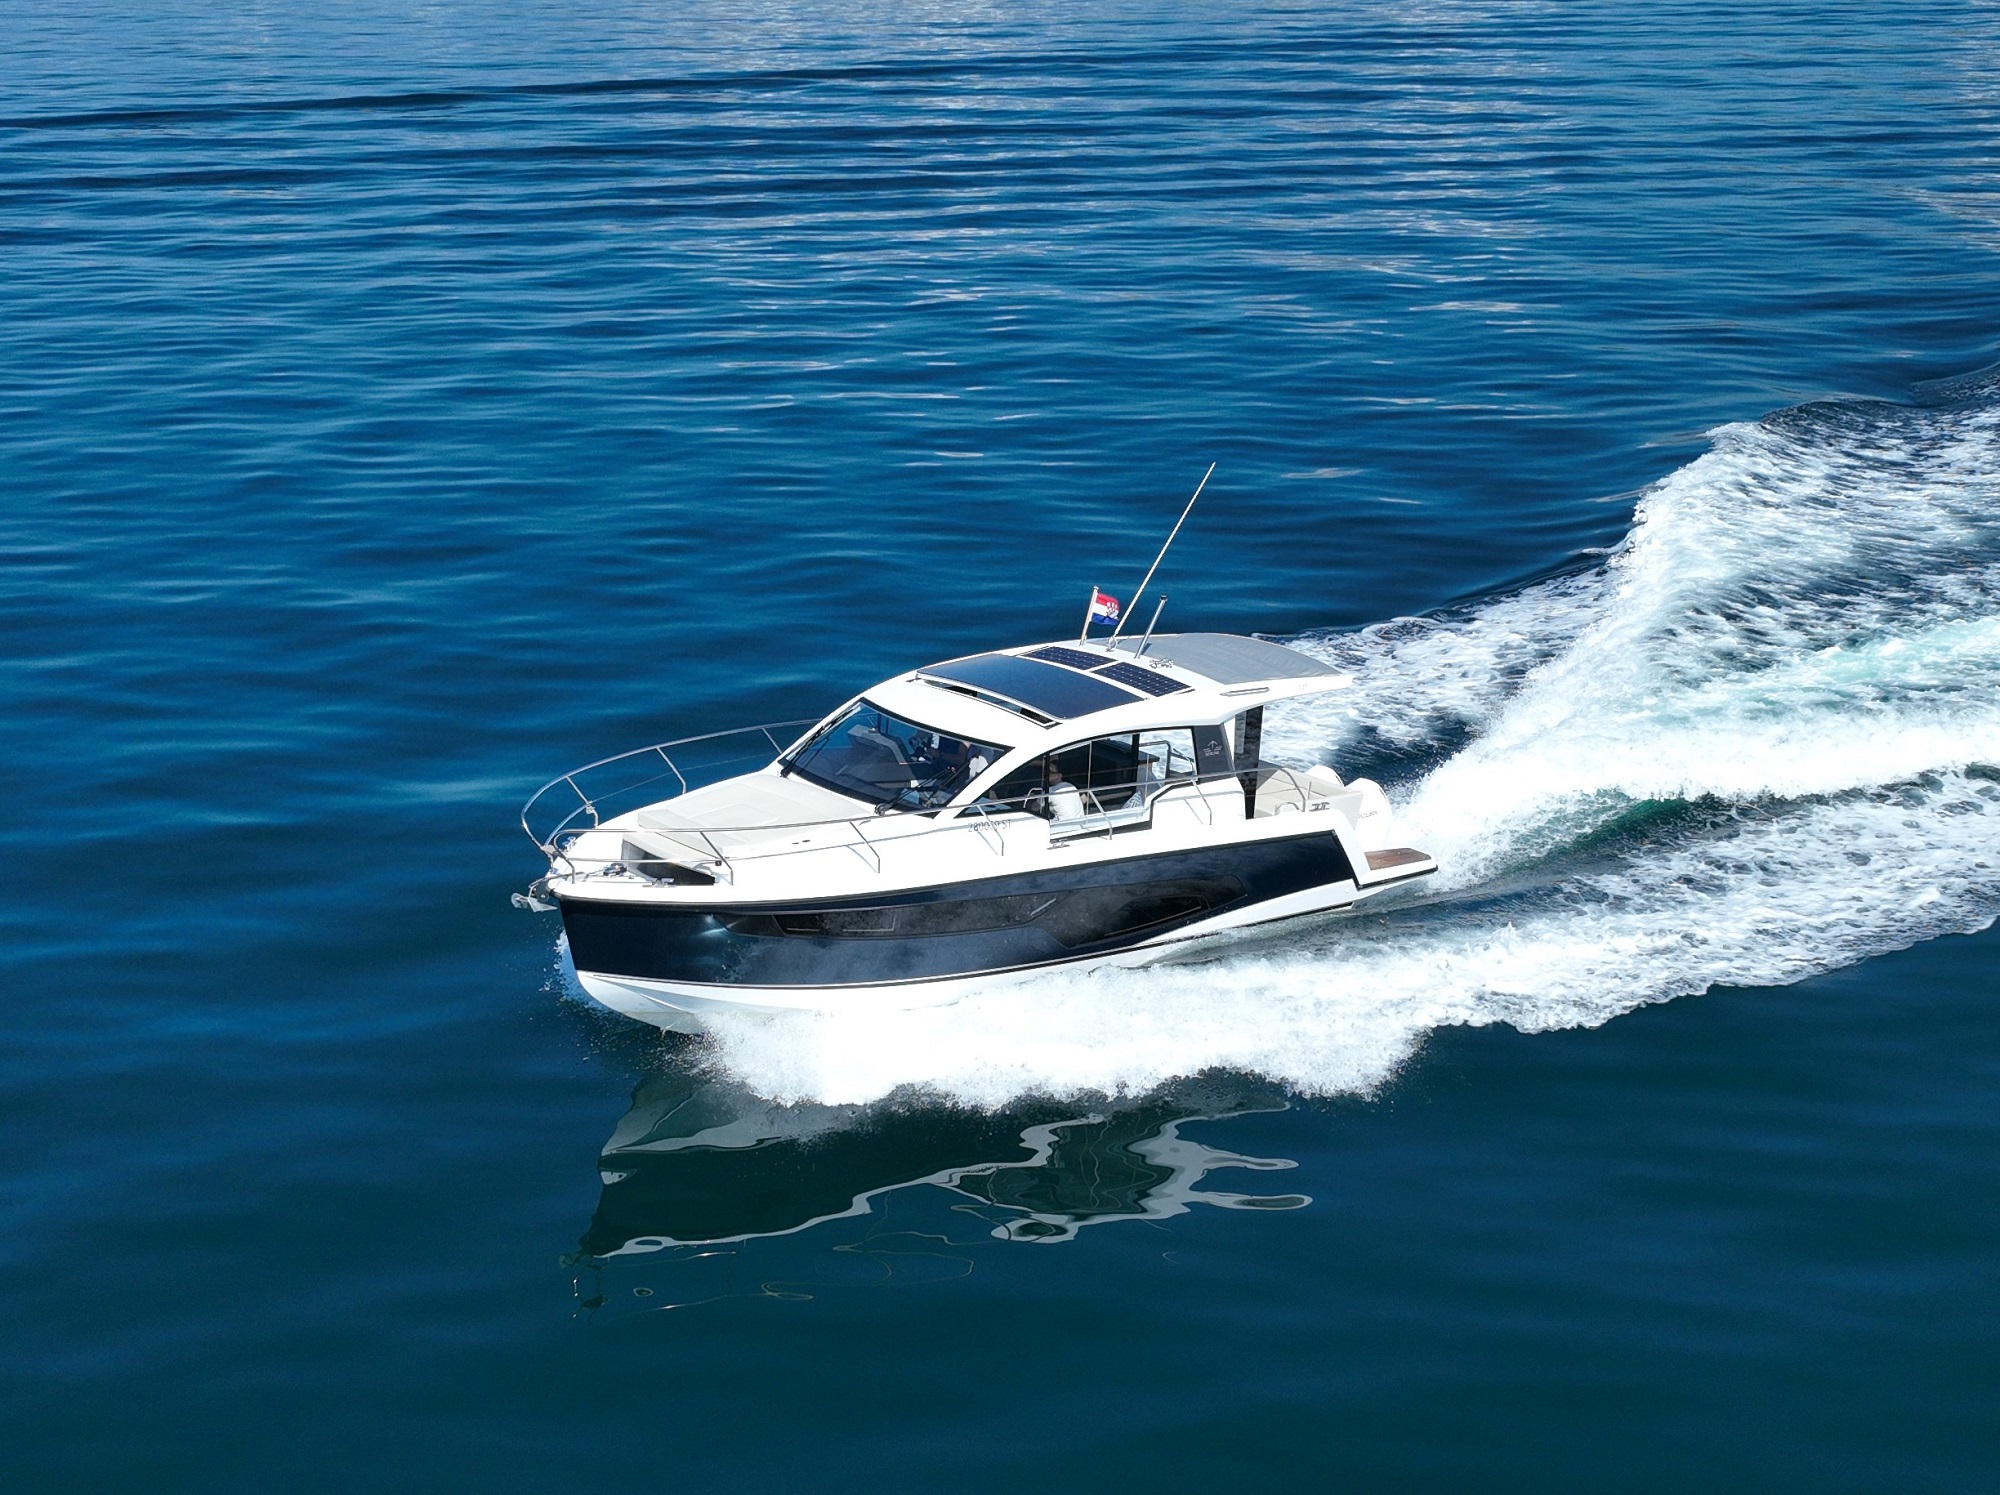 Motorni čoln Sealine C335V Split regija, Hrvaška 5